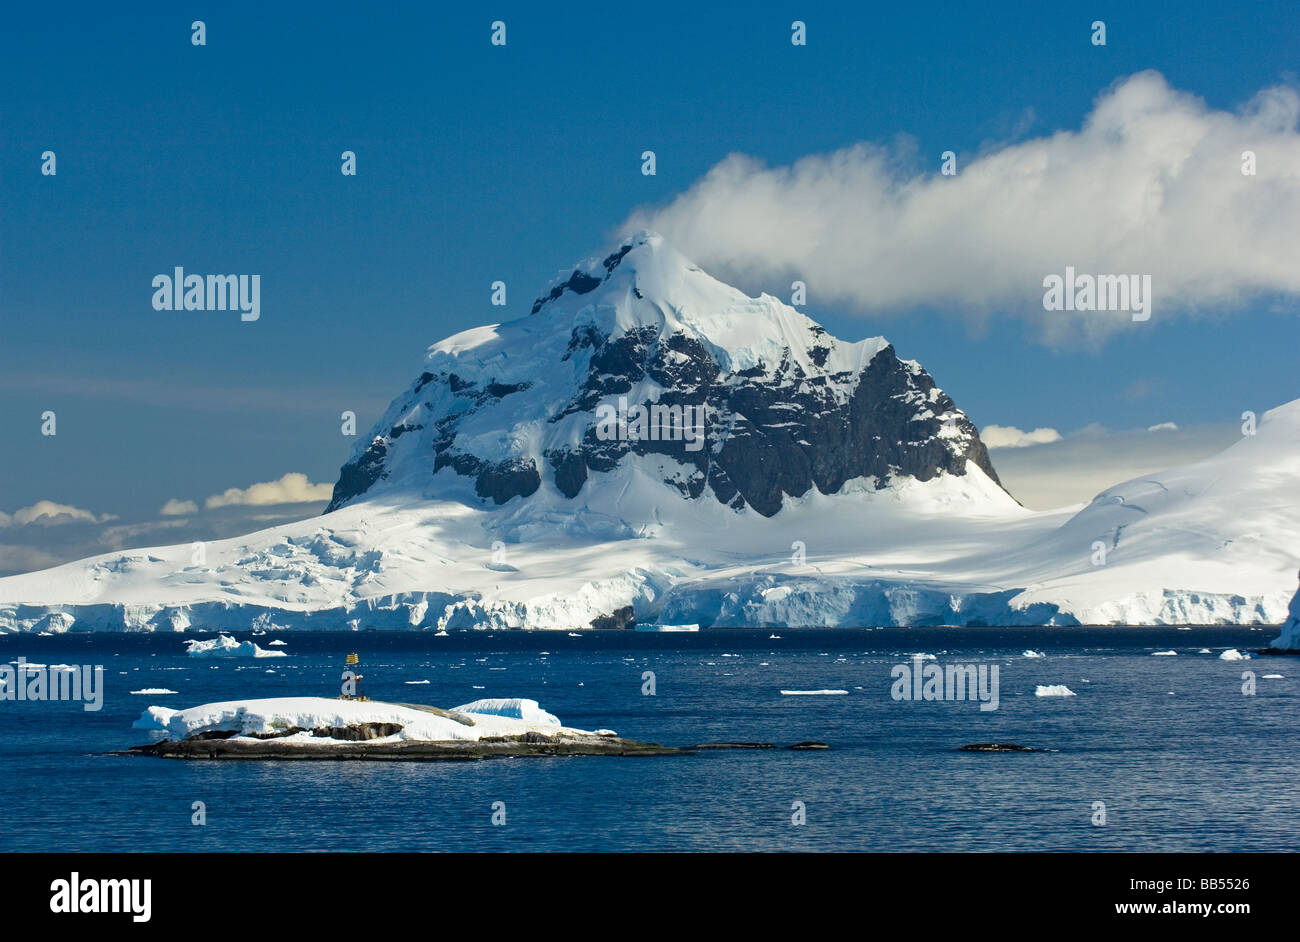 Spectacular Mountain Peak in Gerlache Strait, Antarctic Peninsula ...